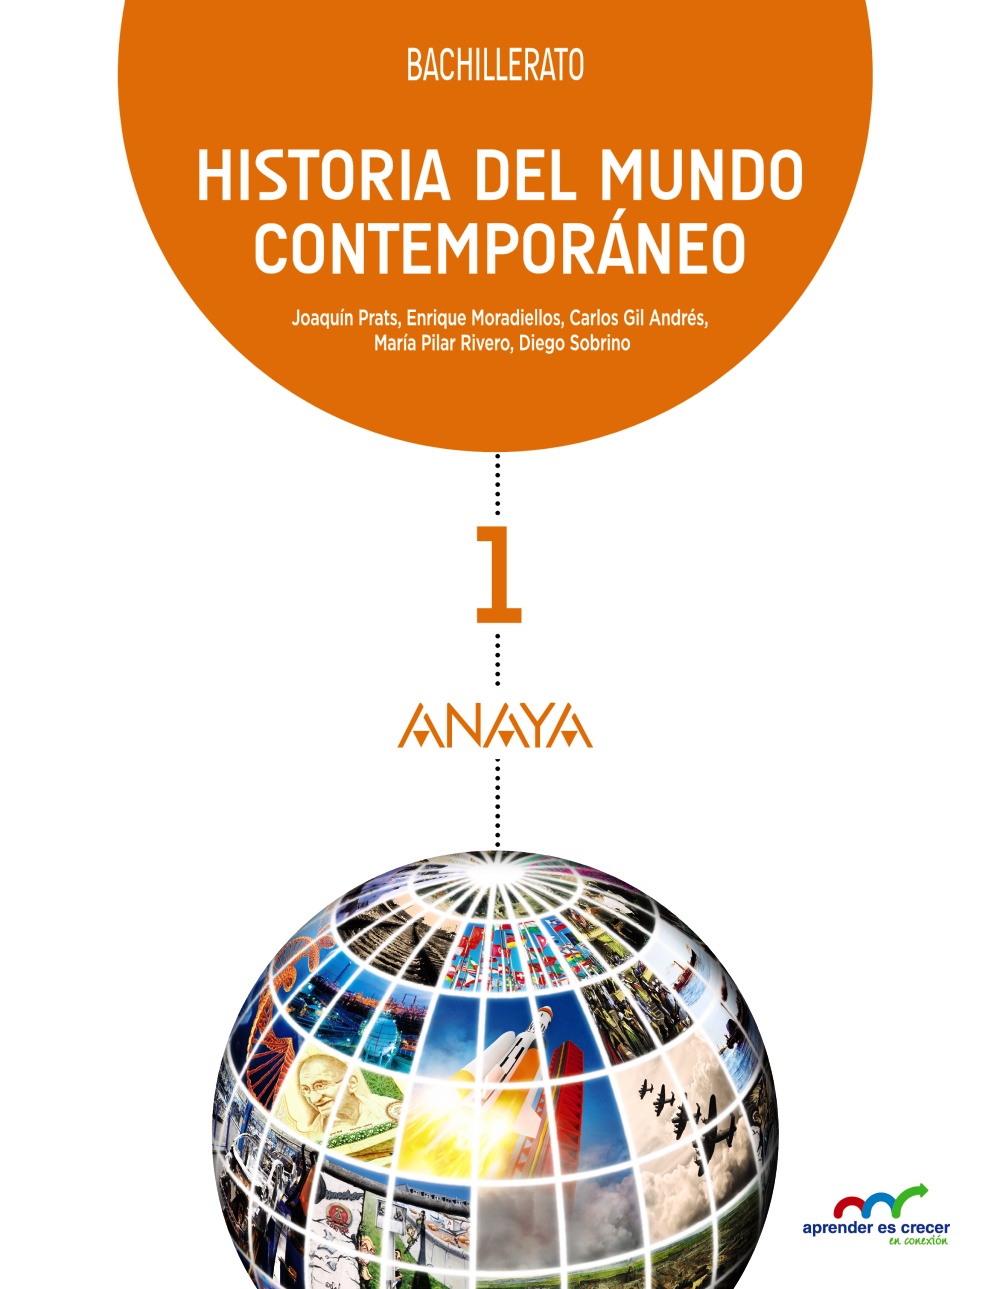 Solucionario Historia del Mundo Contemporaneo 1 Bachillerato Anaya Aprender es Crecer Soluciones PDF-descargar-pdf